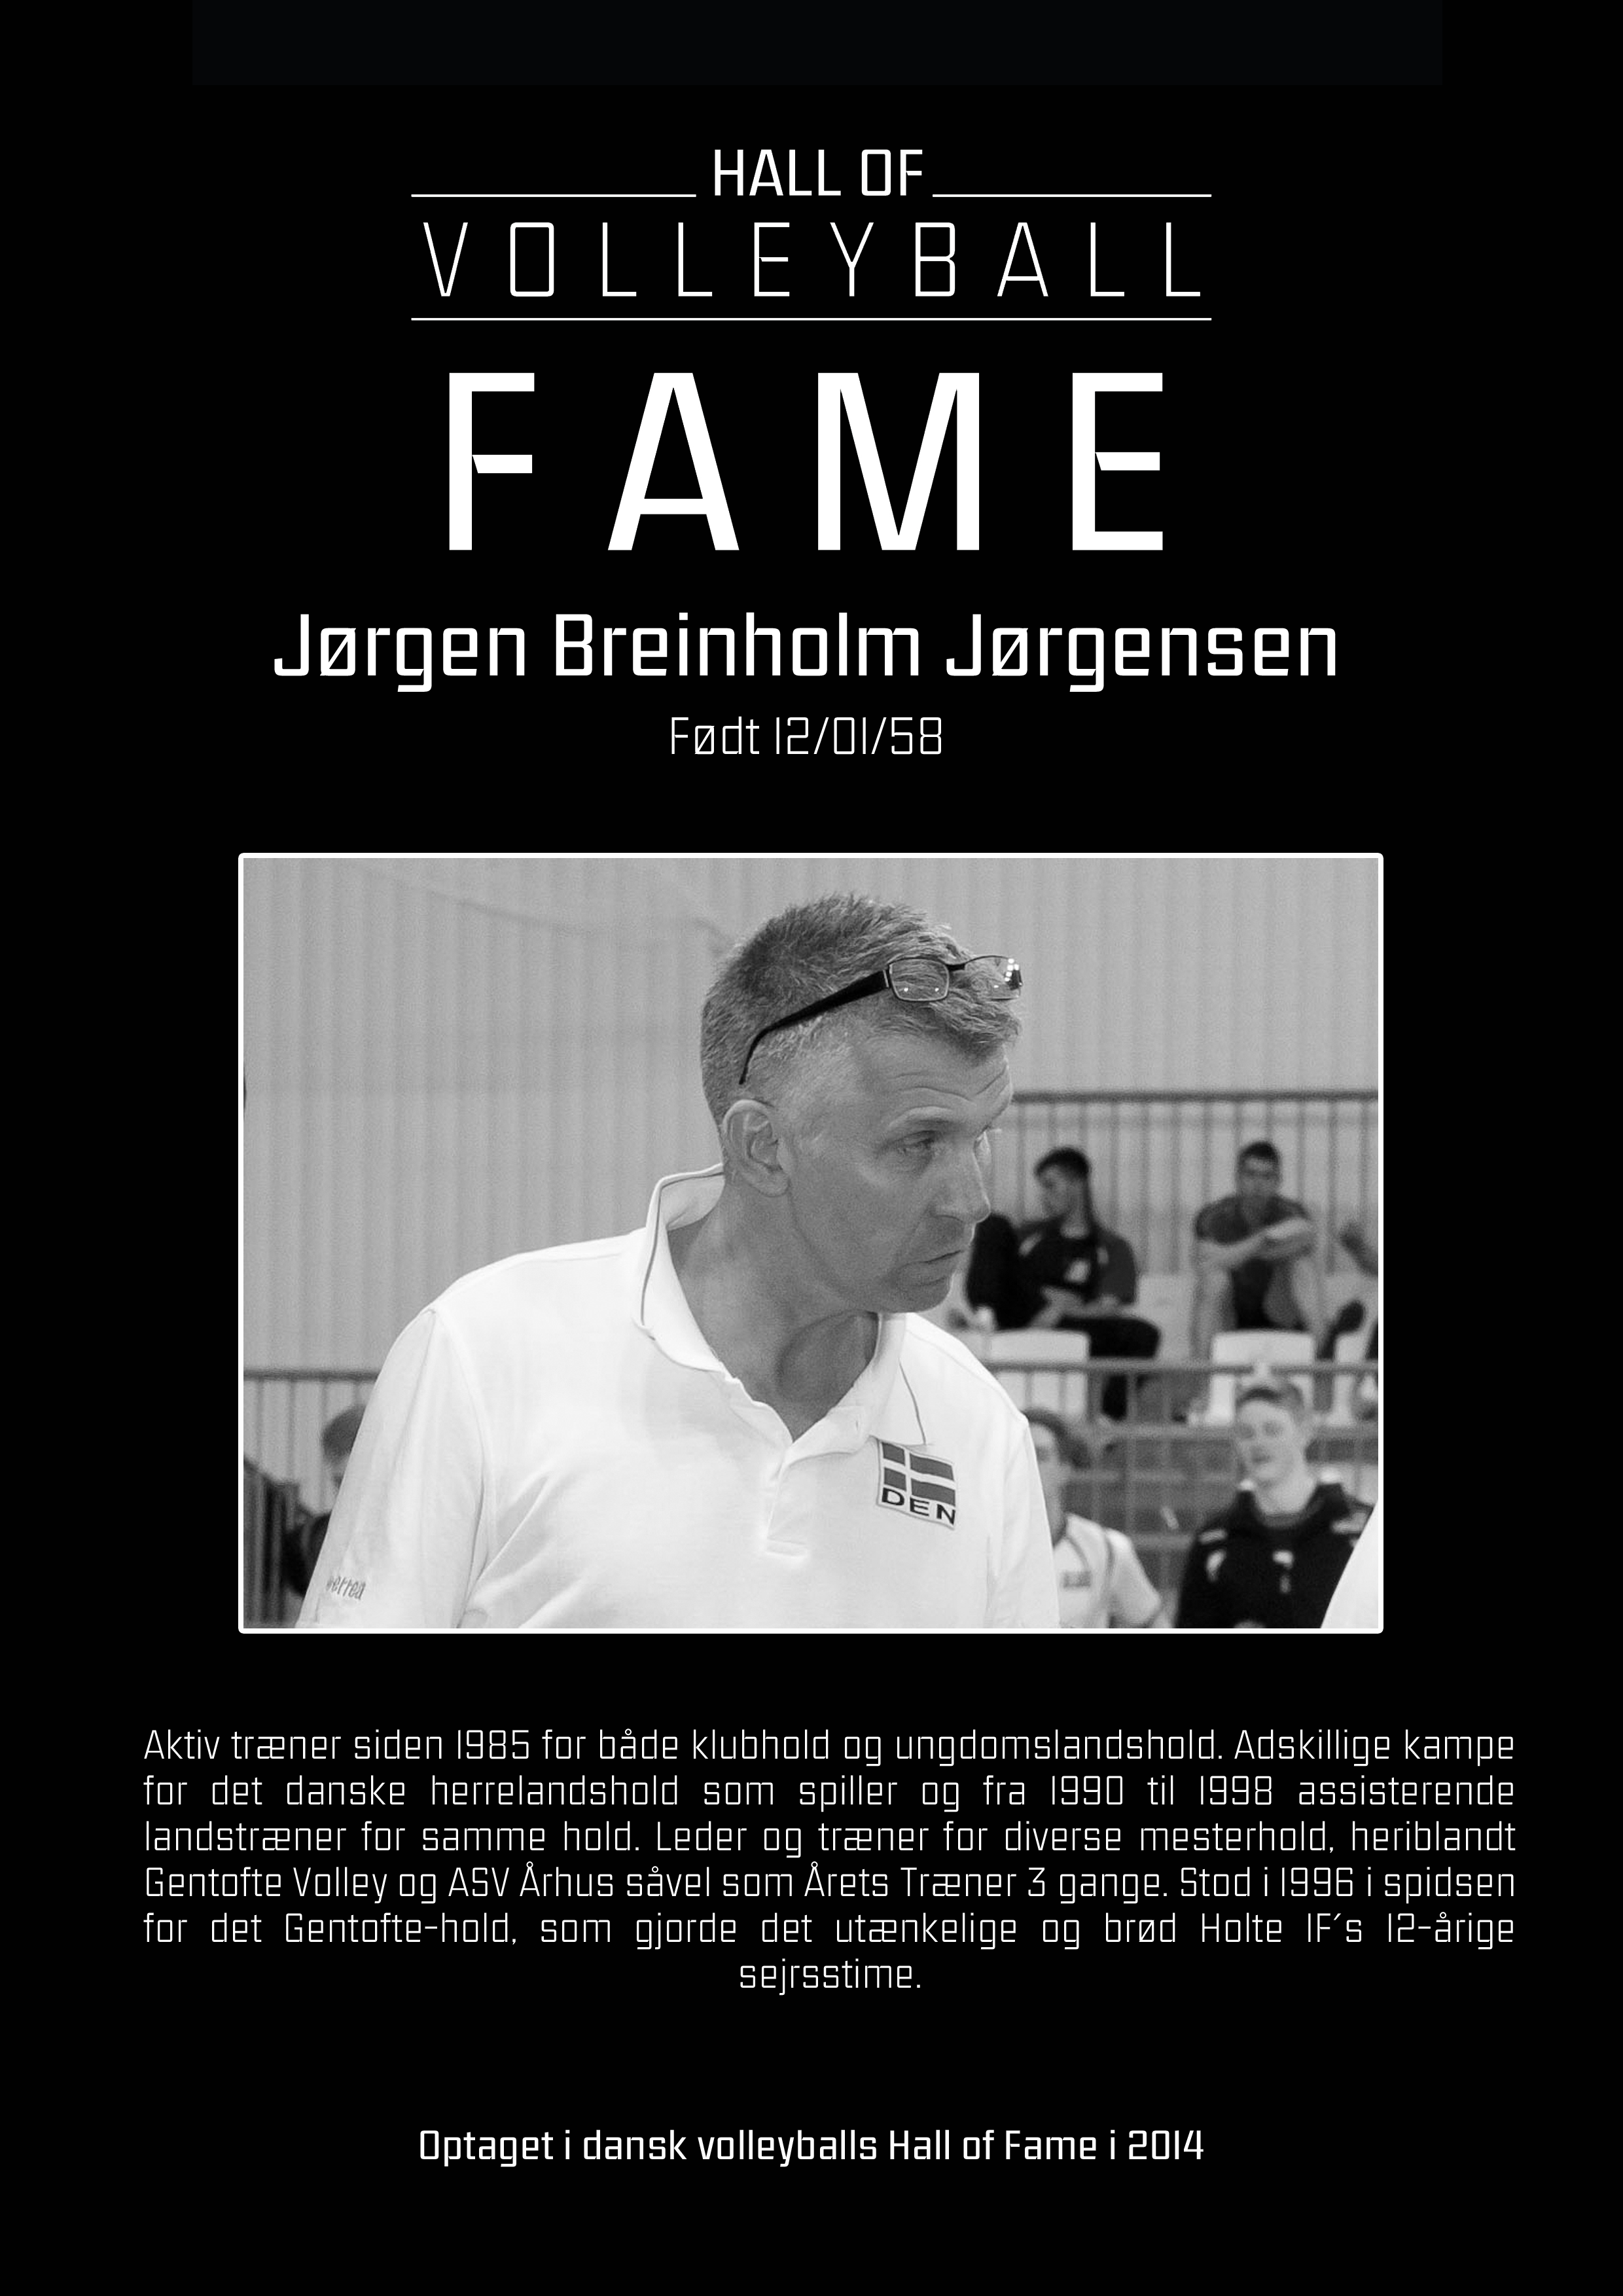 Jørgen Breinholm Jørgensen